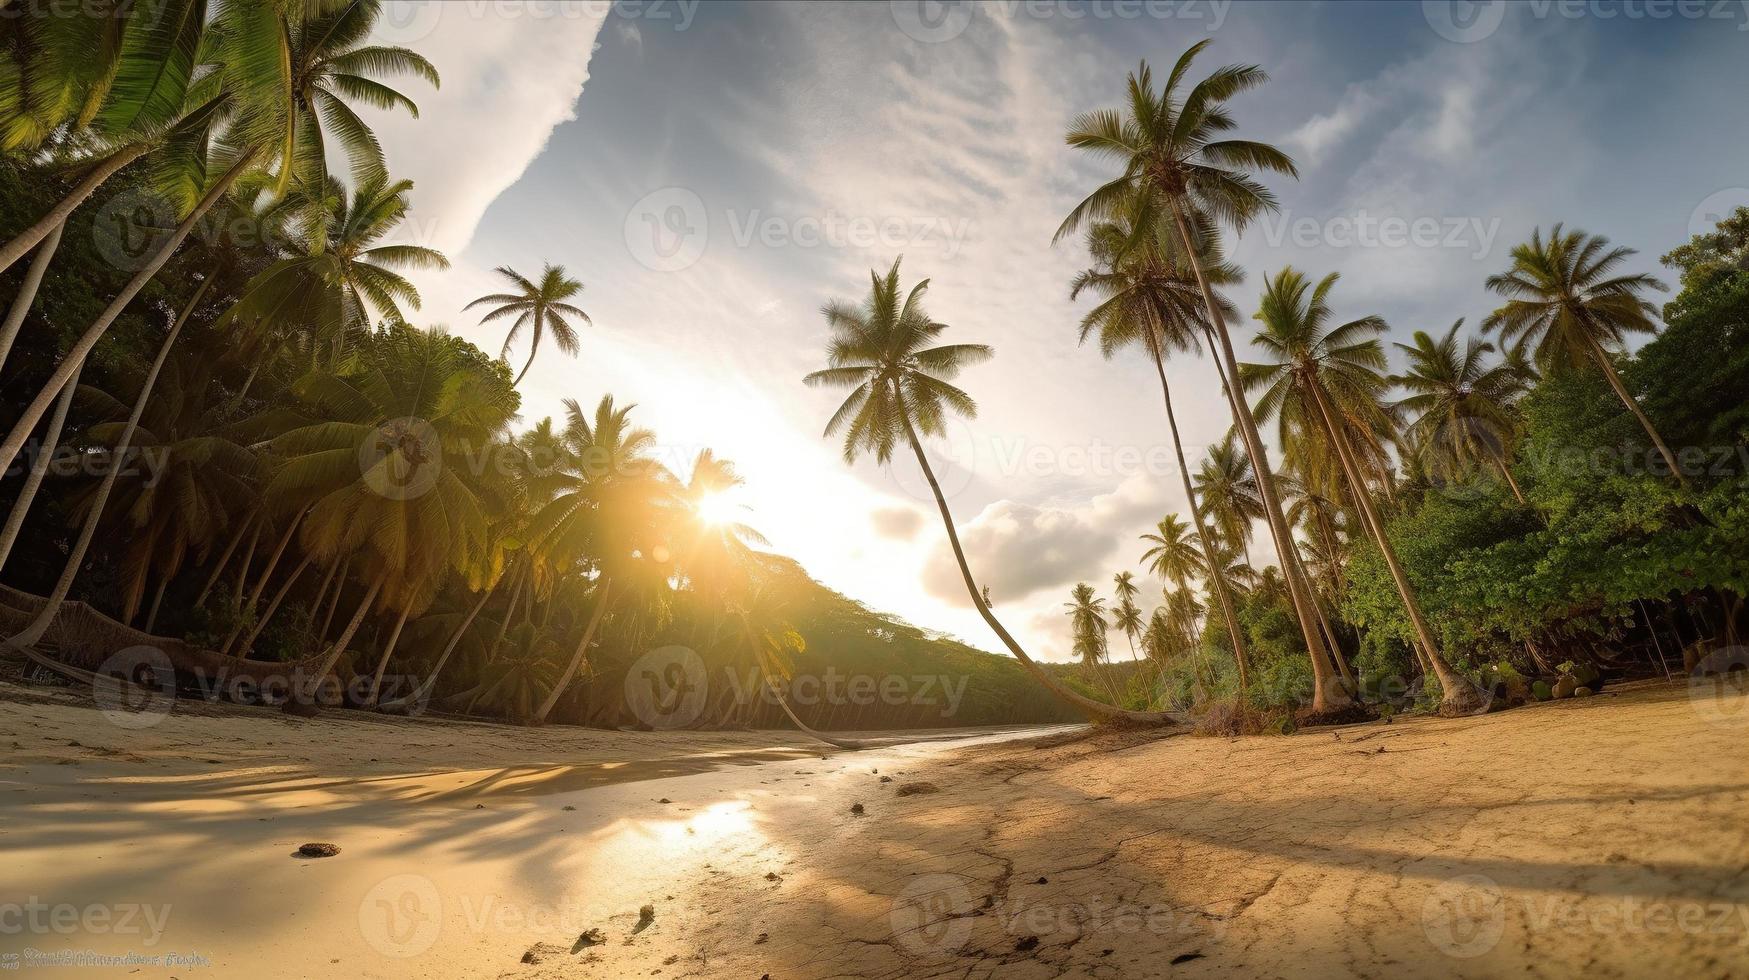 tropical paraíso o Coco palma playa o blanco arena laguna foto